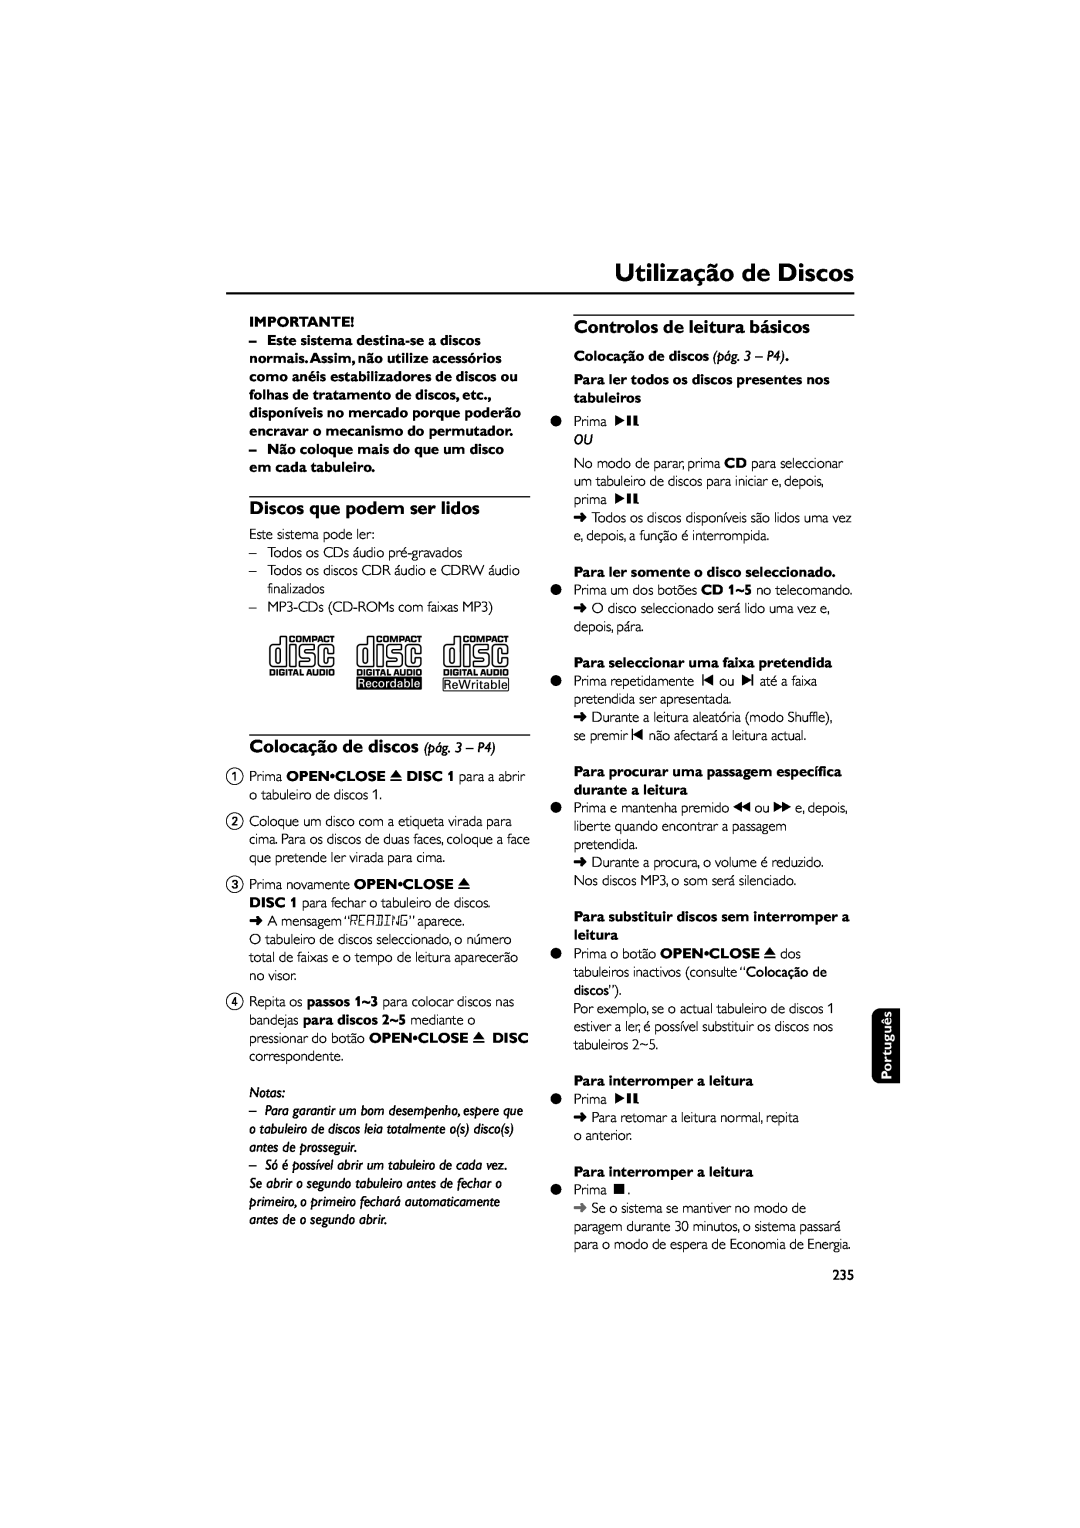 Philips FWM589 manual Utilização de Discos, Importante, Notas, Colocação de discos pág. 3 - P4, Para interromper a leitura 